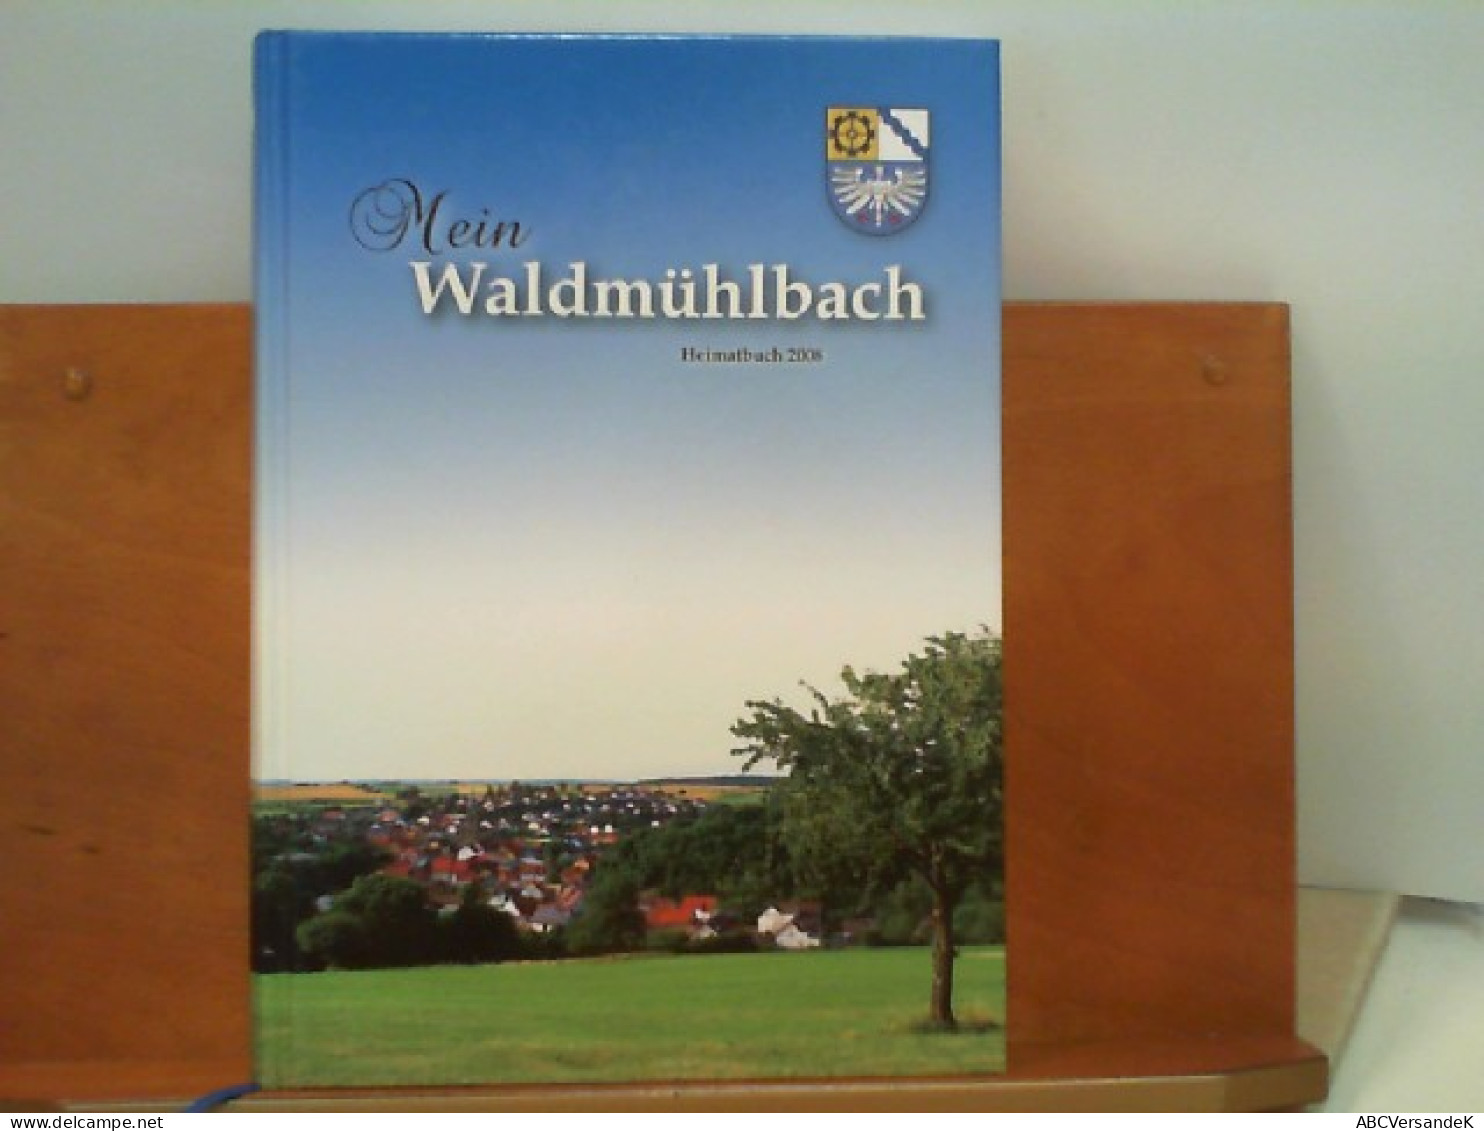 Mein Waldmühlbach - Heimatbuch 2008 - Allemagne (général)